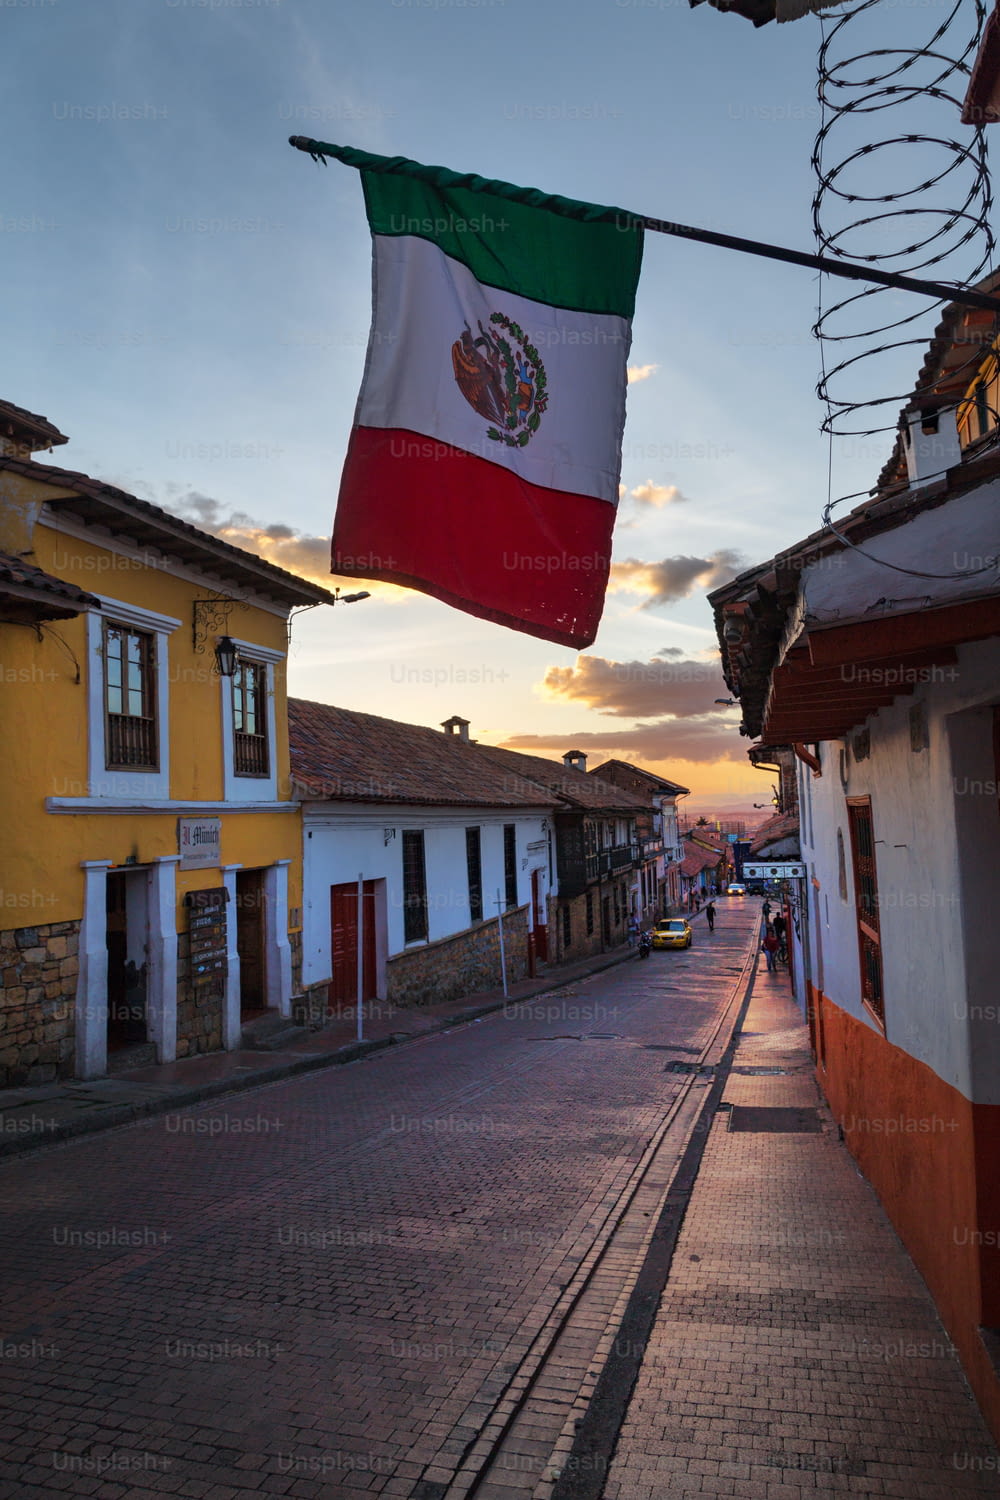 La bandera mexicana sobre una calle empedrada en el barrio Candelaria de Bogotá, Colombia